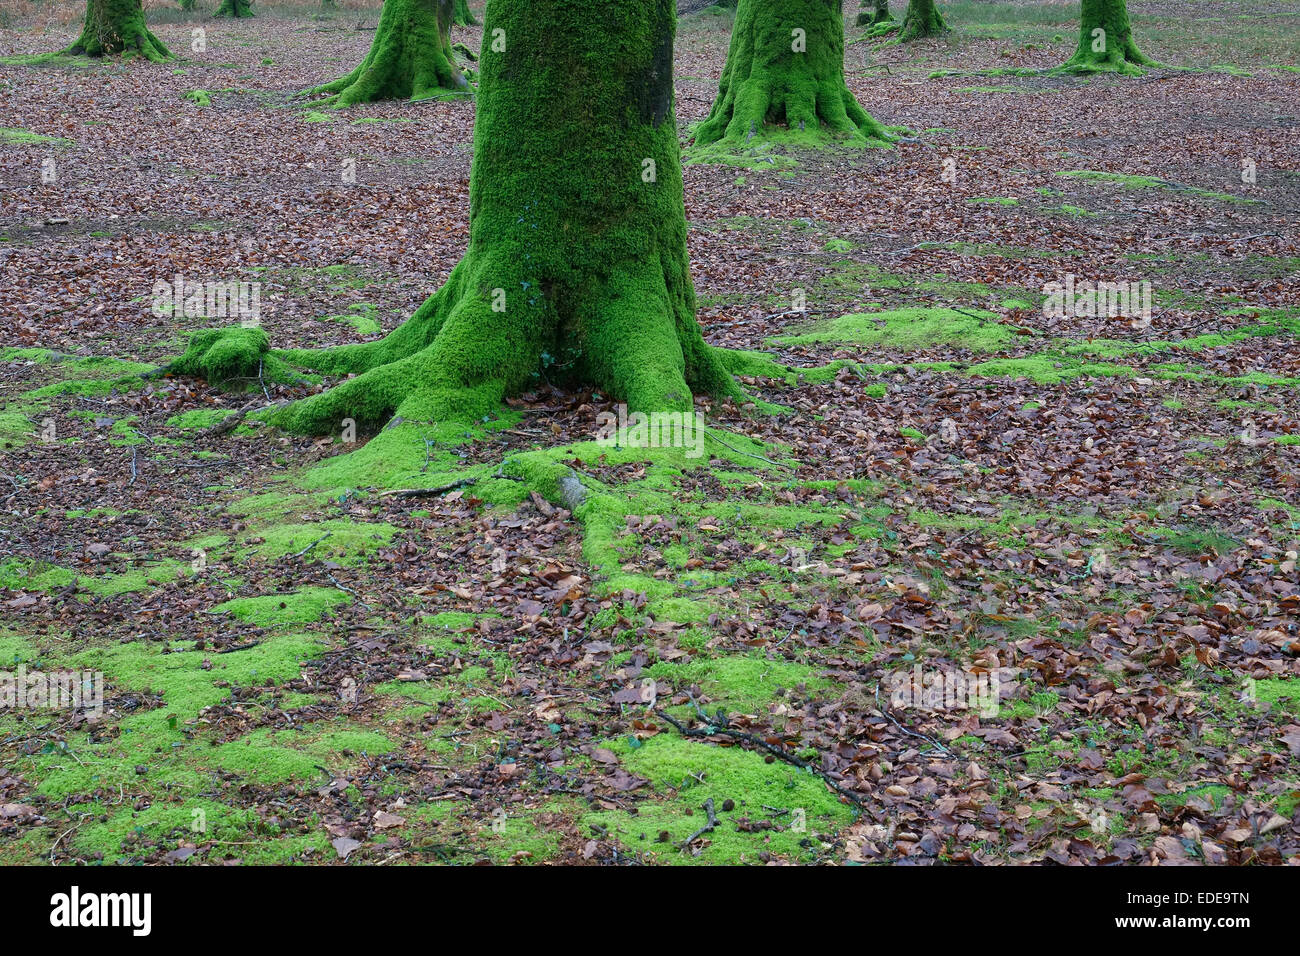 Grüne Moos bedeckte Baumstämme im Wald, normandie, frankreich Stockfoto